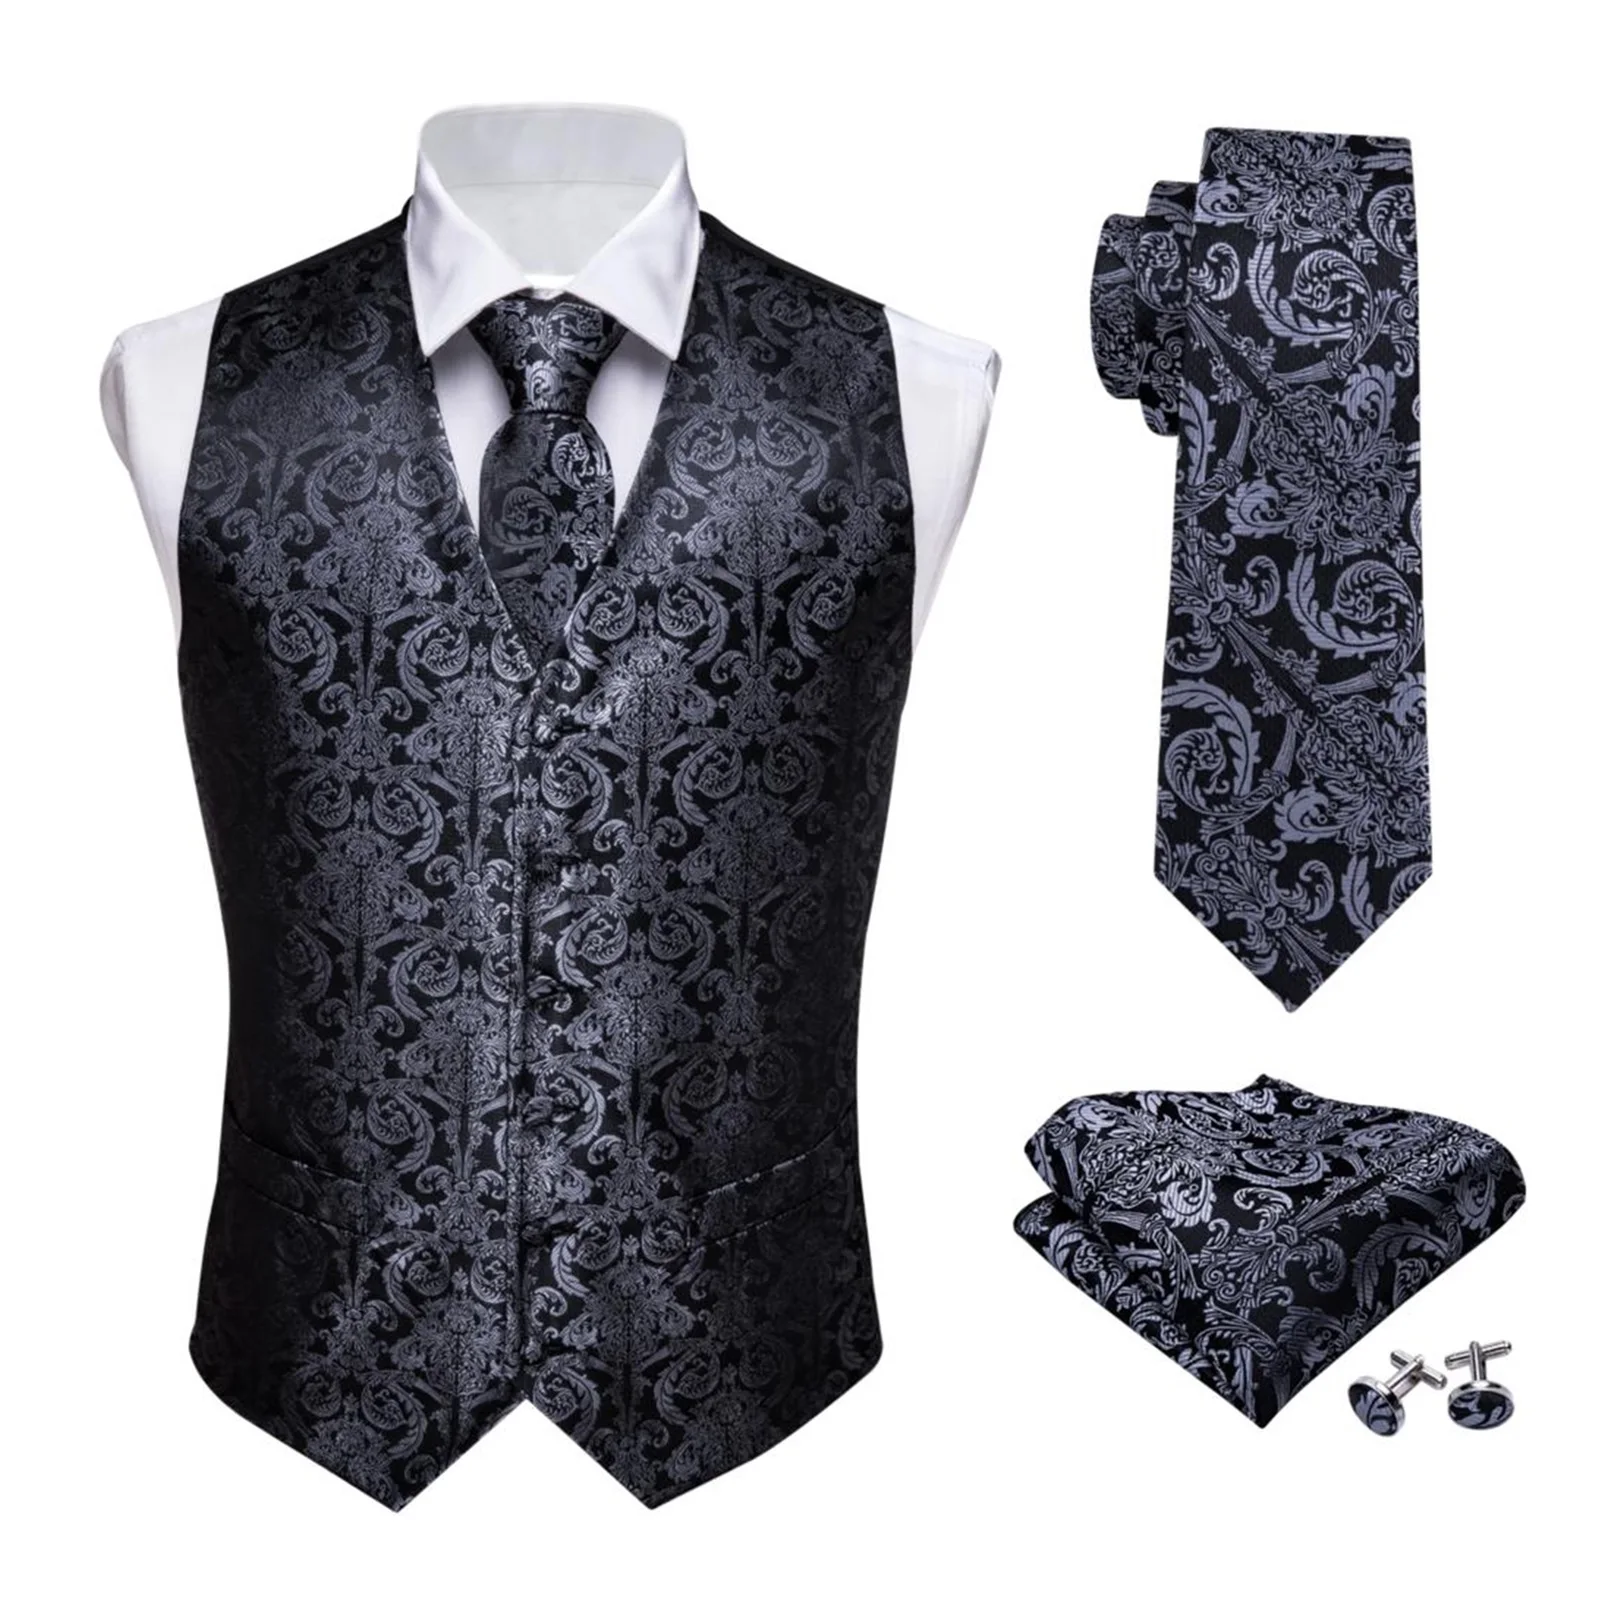 

2021 новый дизайнерский мужской классический черный Жаккардовый жилет с пейсли-огурцами, жилет из складного шелка, носовой платок, галстук, ж...